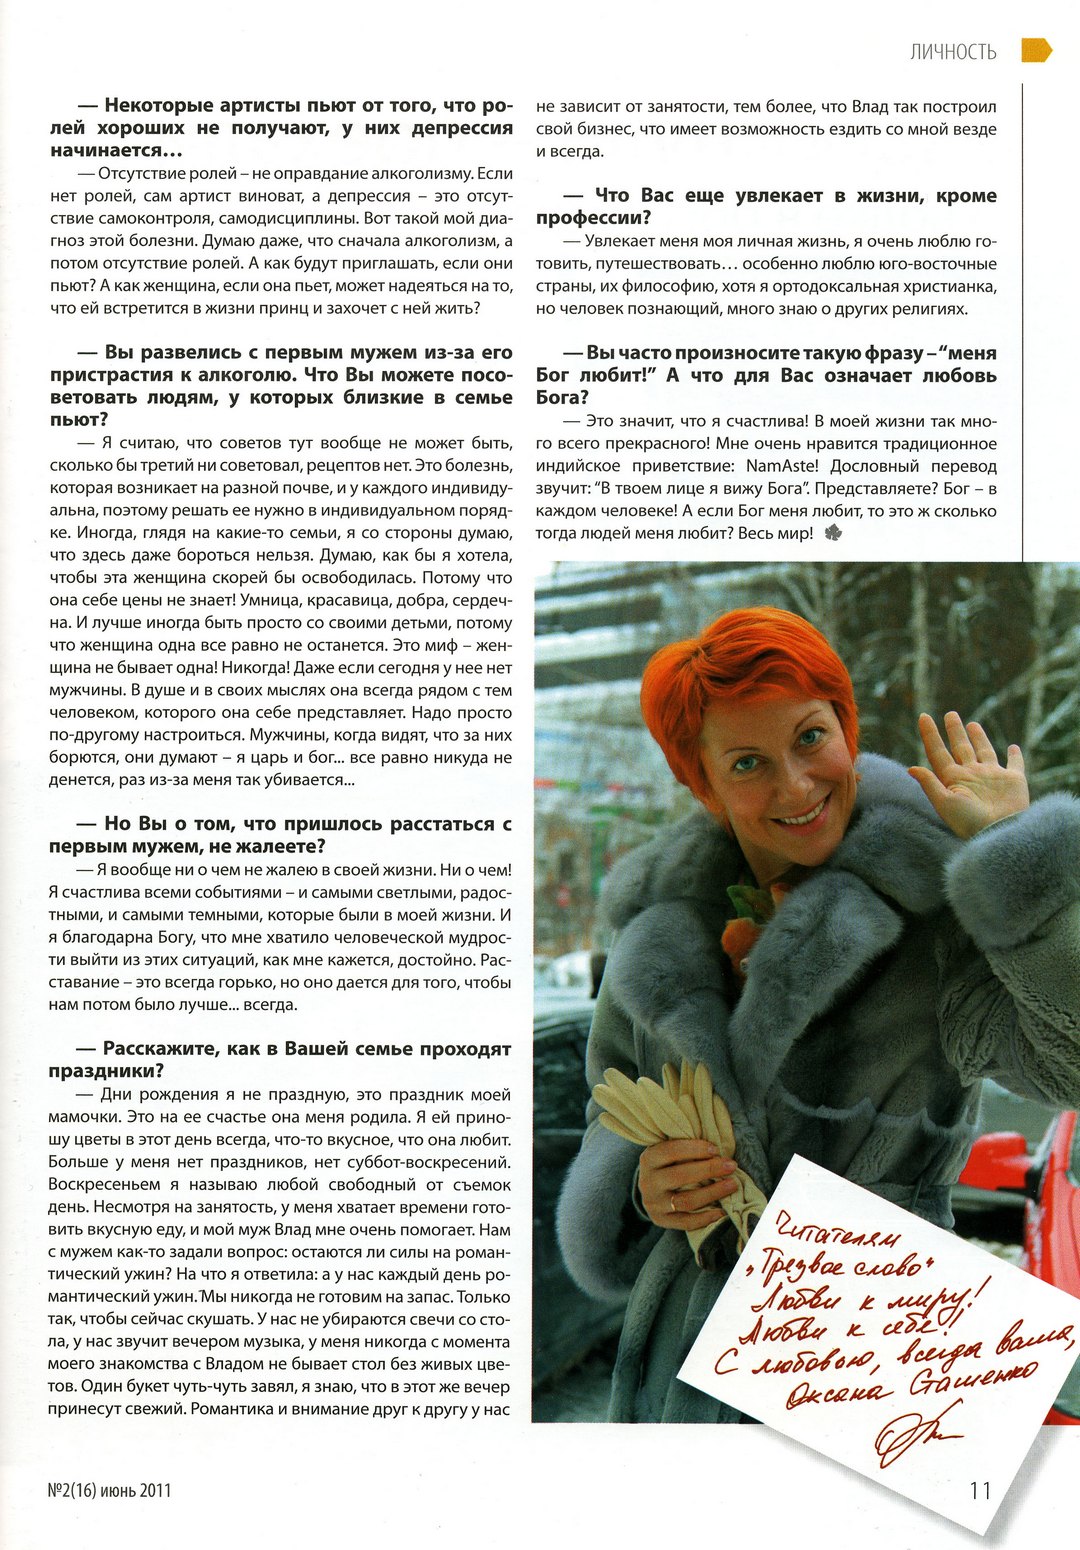 Оксана Сташенко: "Не хочу проспать свою жизнь" читать всем журнал